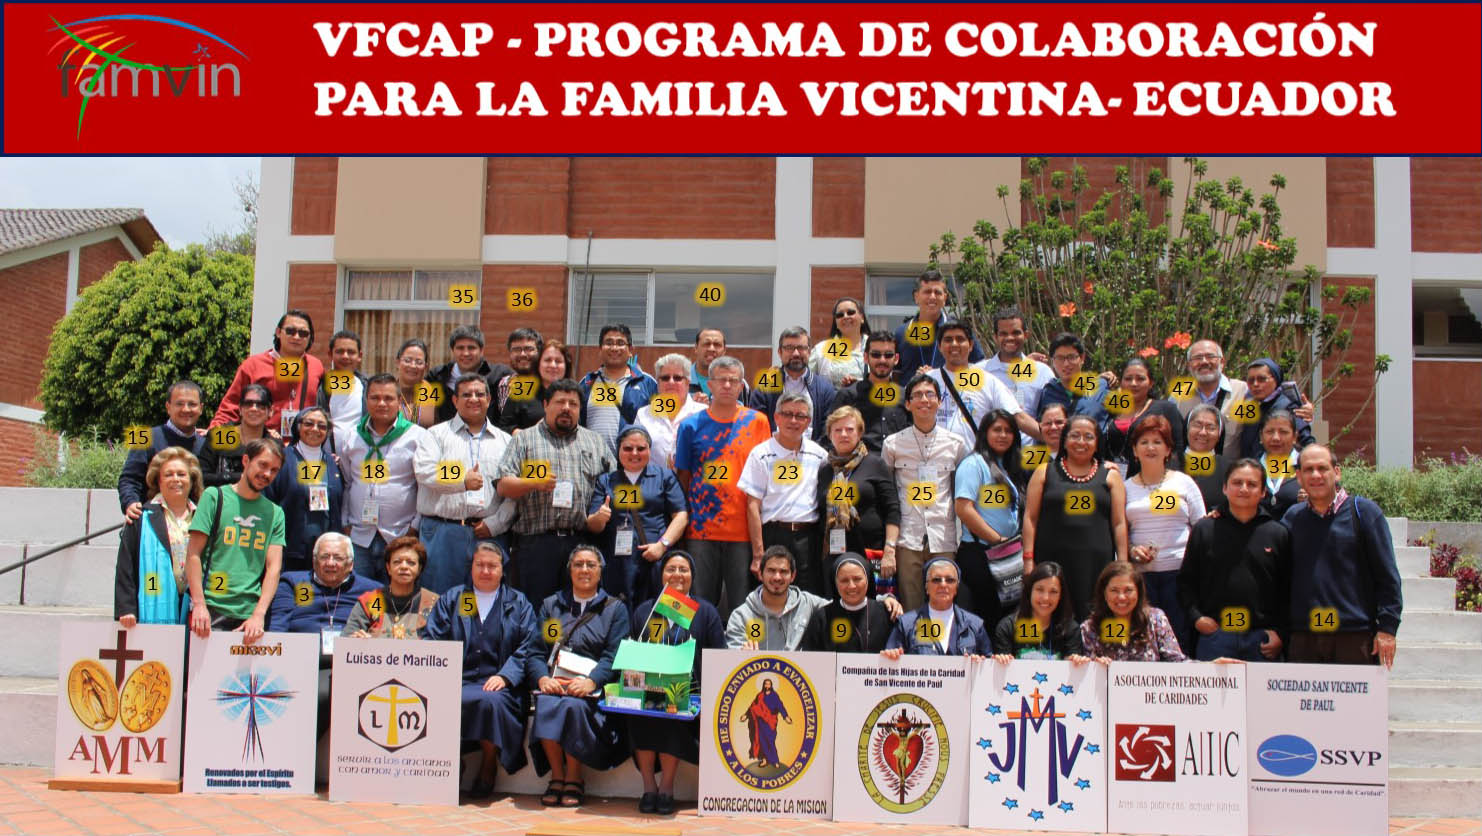 Crónica de la reunión de VFCAP en Quito (Ecuador)